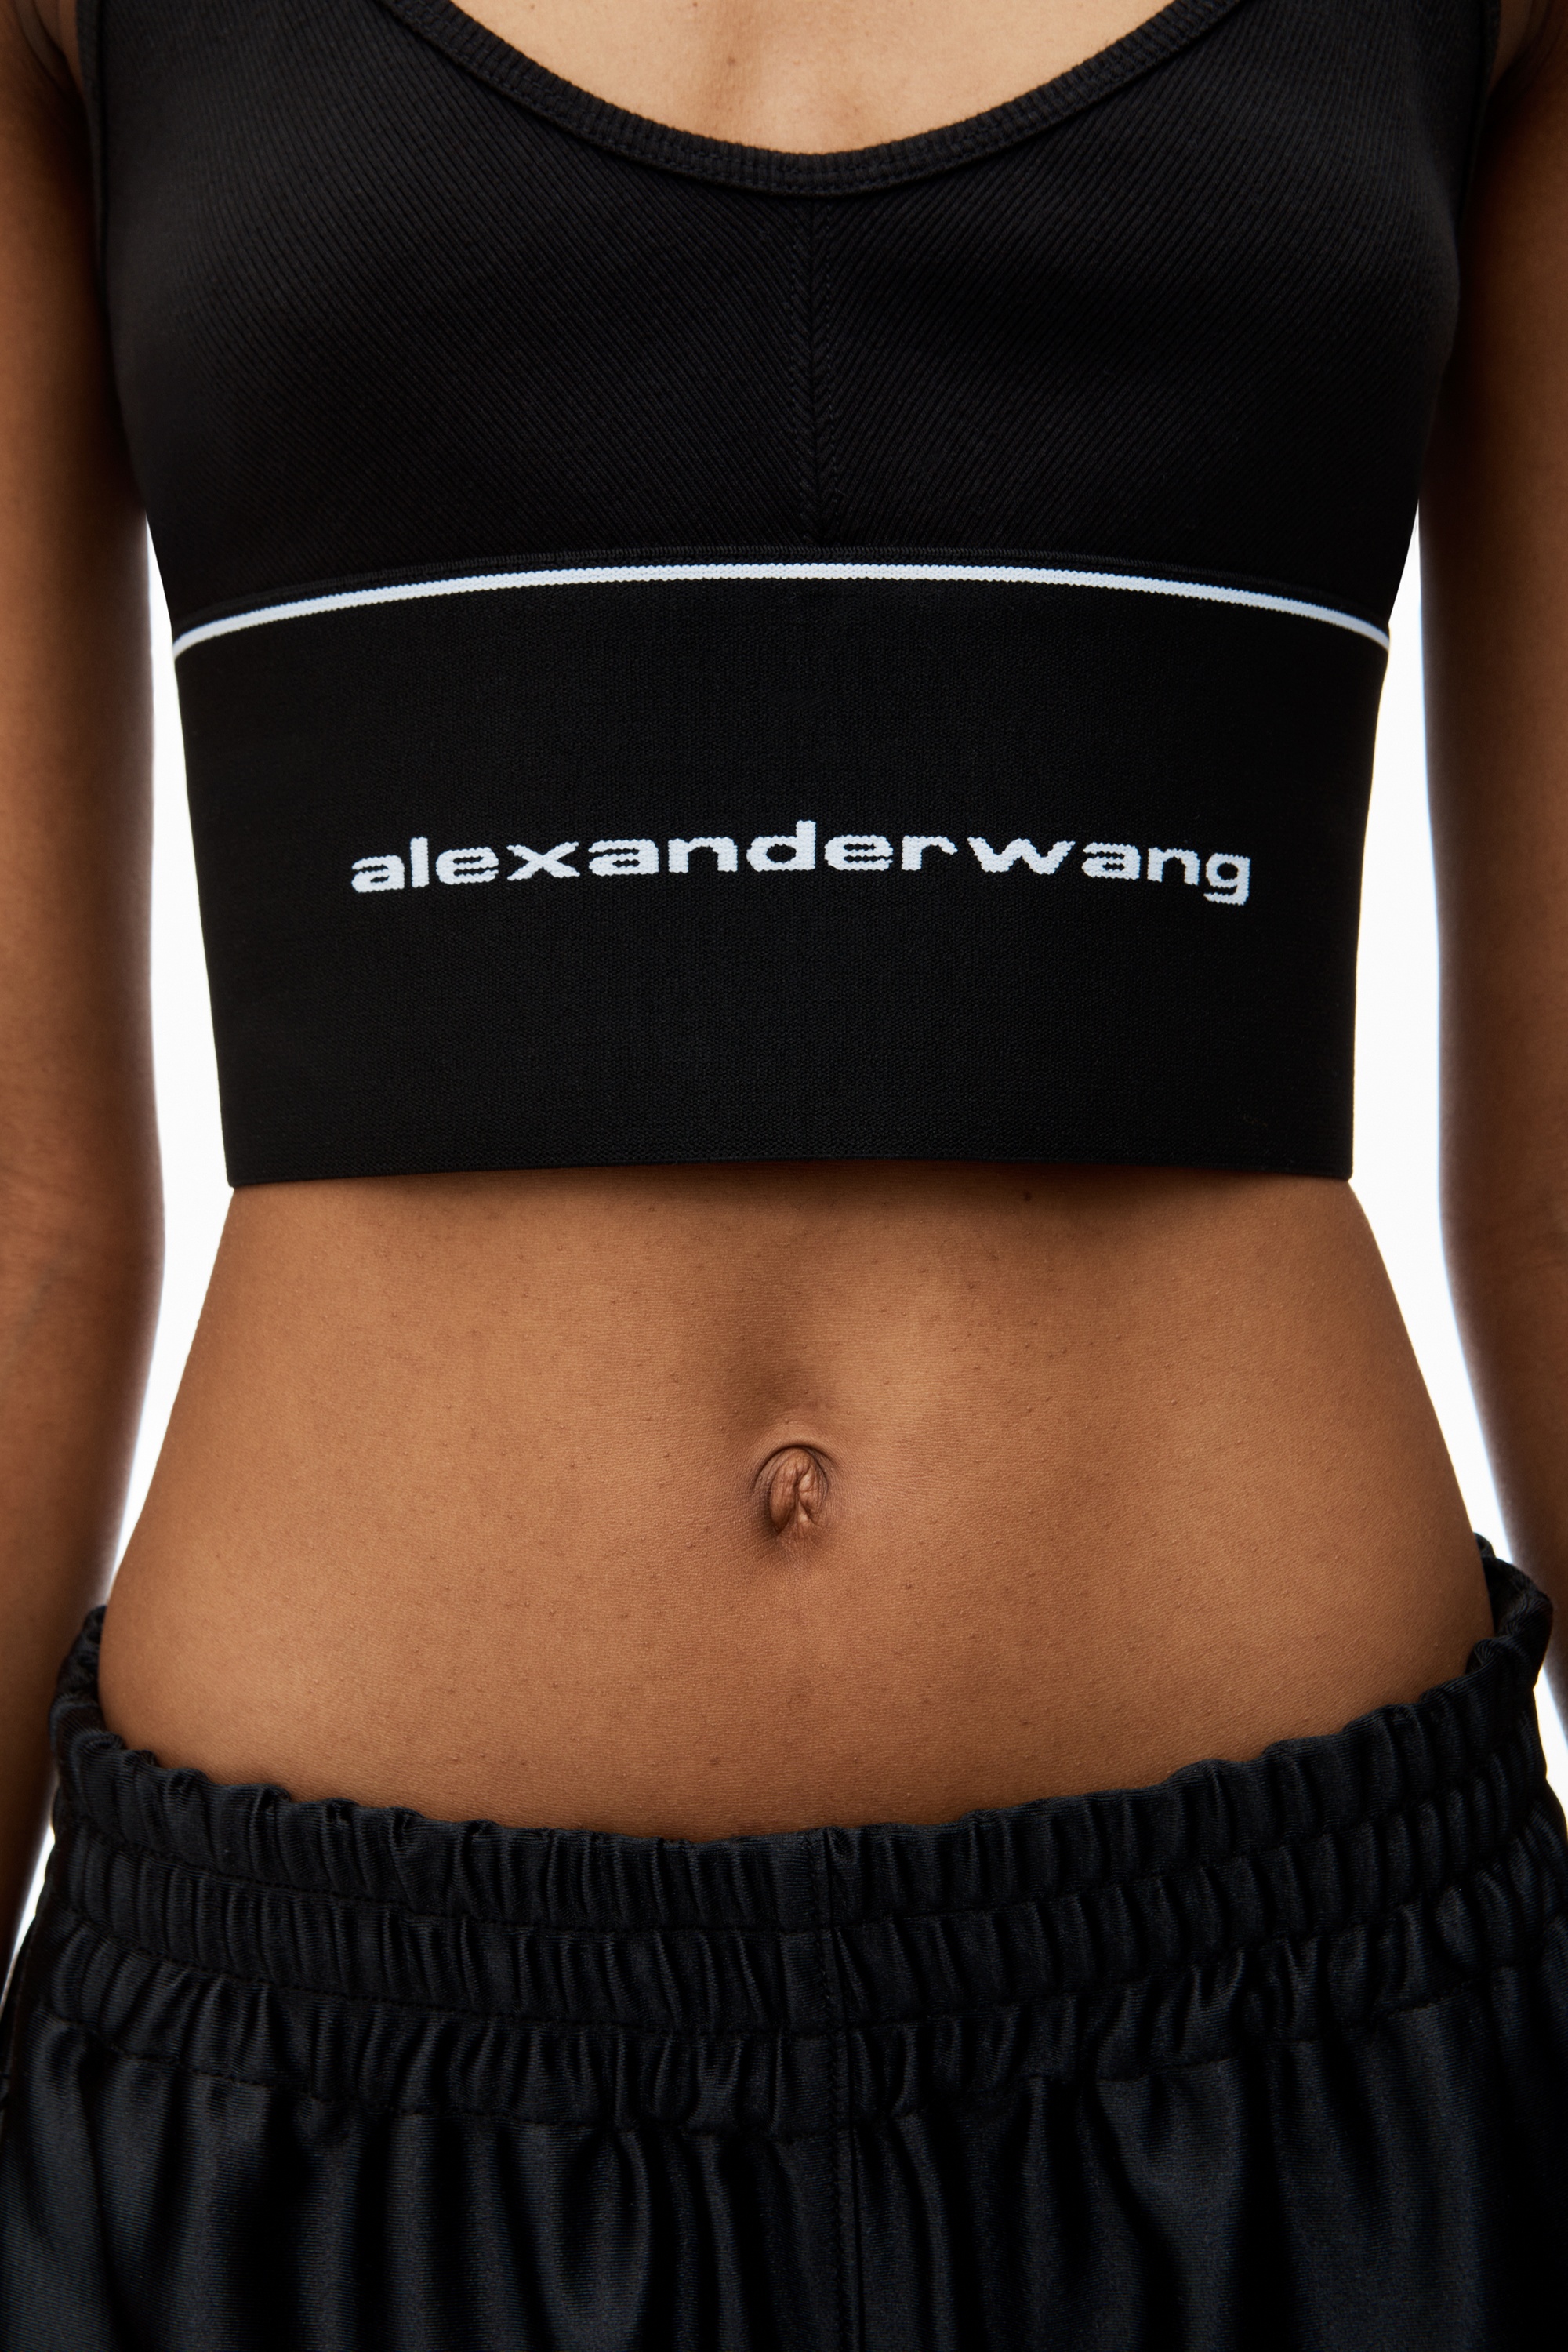 ALEXANDER WANG, Scoop Neck Logo Elastic Bra Top, Women